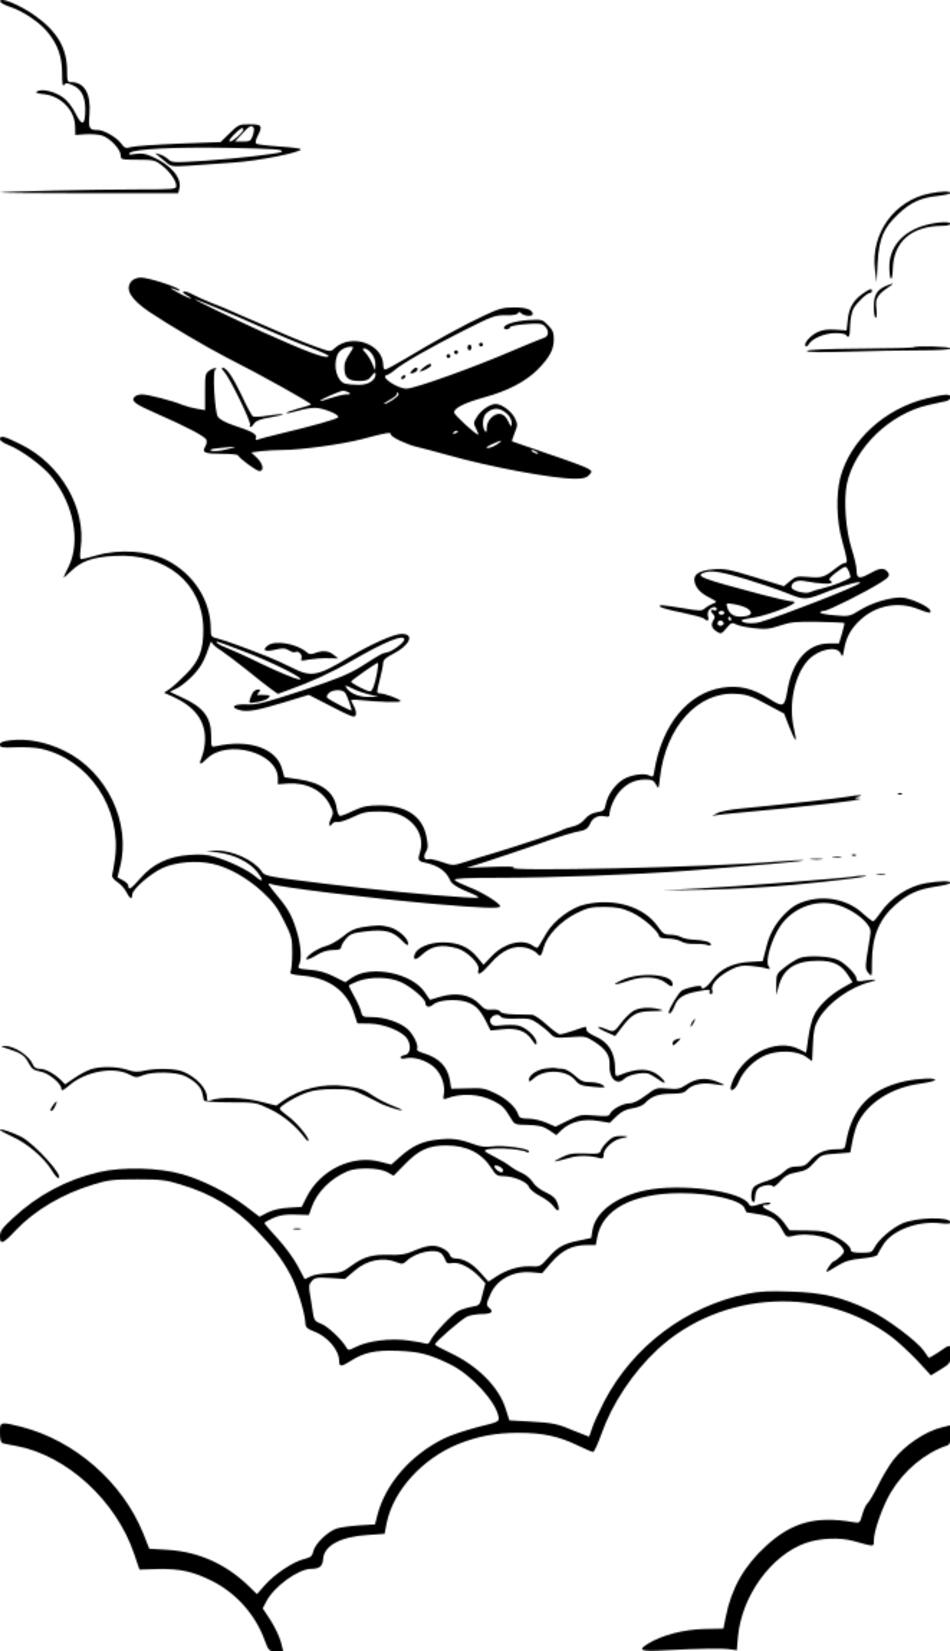 Libro para colorear Volando sobre las nubes en aviones (Vertical)